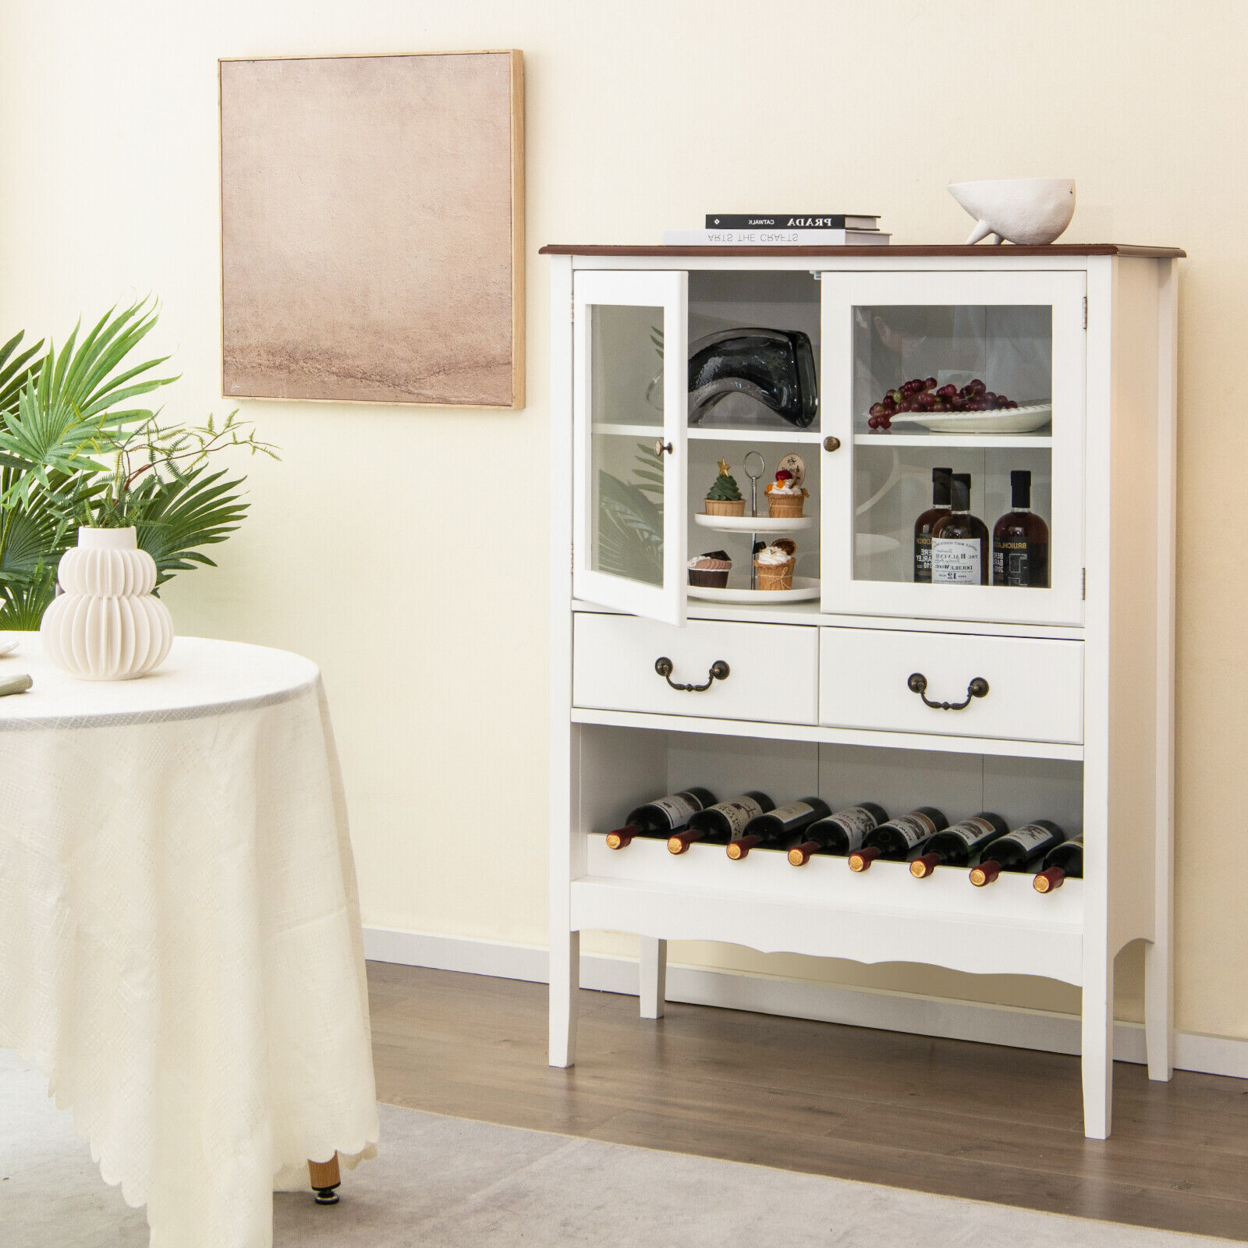 2-Door Liquor Coffee Bar Cabinet Freestanding Buffet Sideboard Wine Rack Drawers